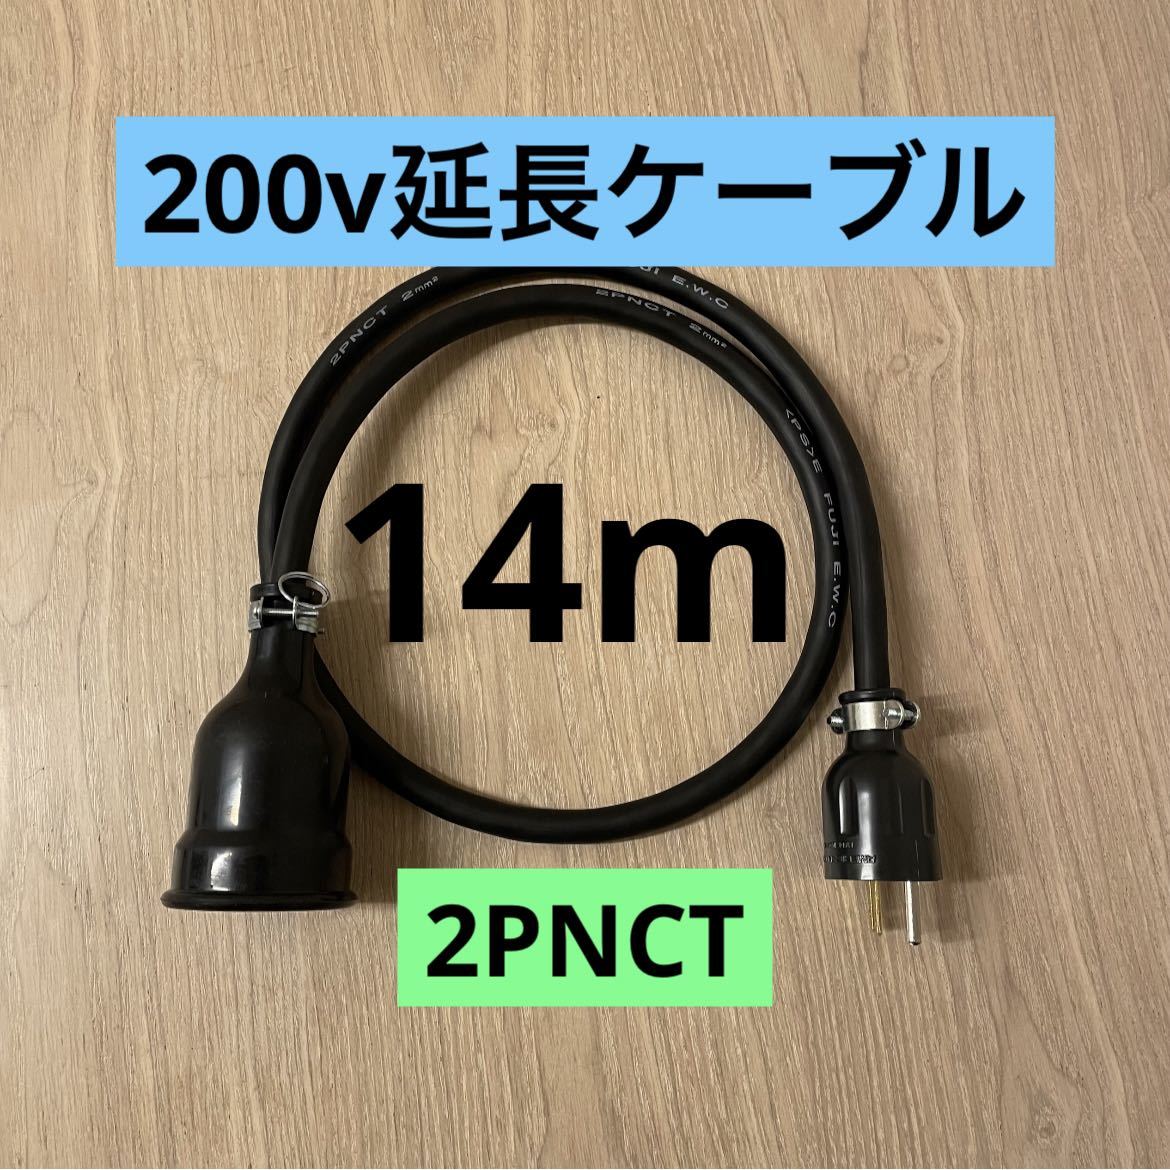 ★ 電気自動車コンセント★ 200V 充電器延長ケーブル14m 2PNCTコード